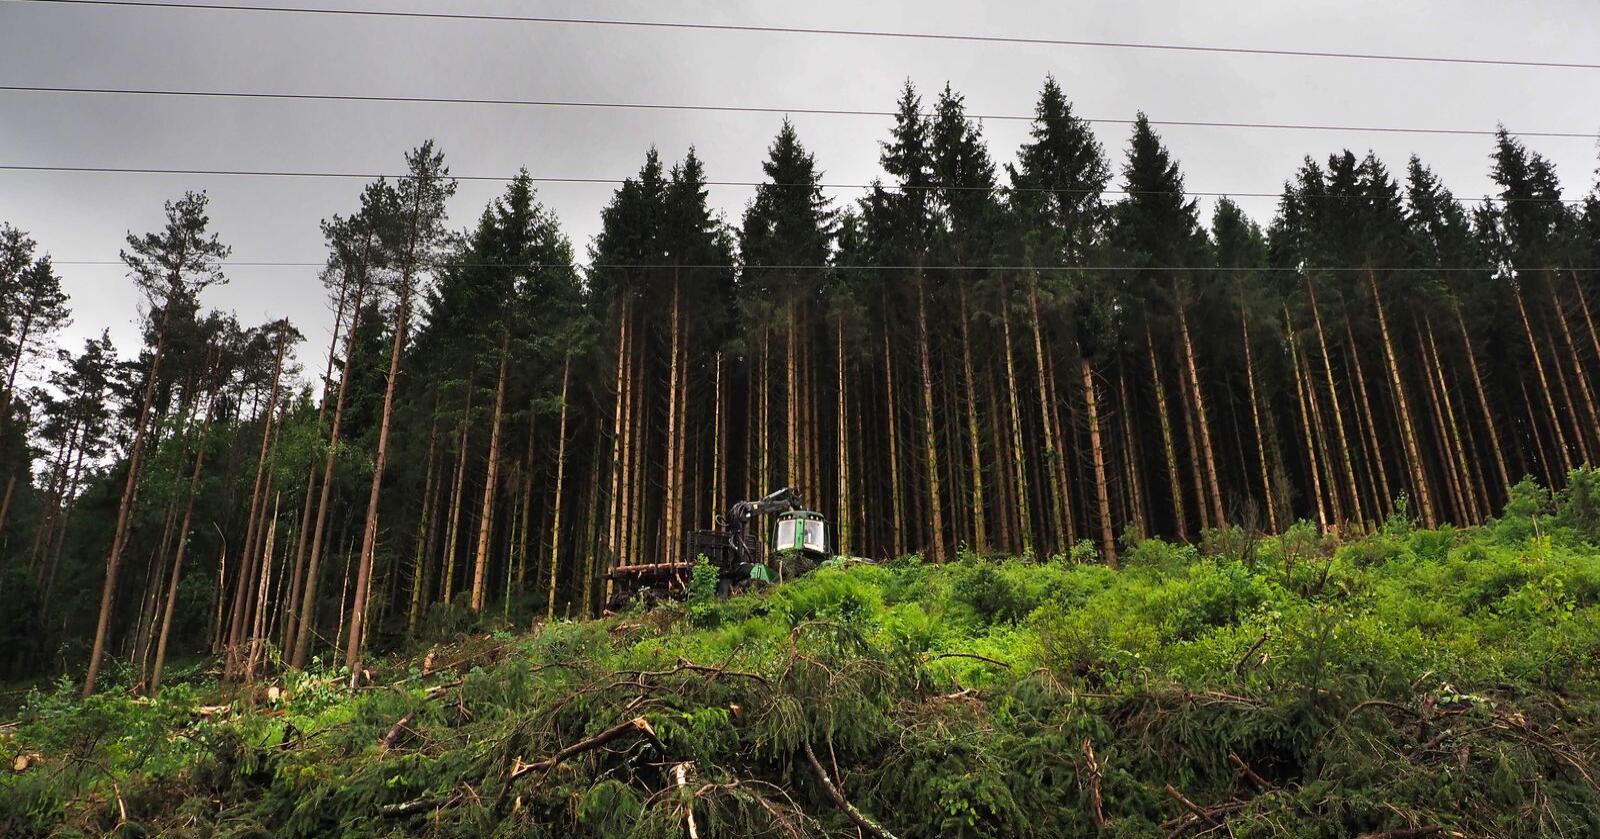 Skogen skal brukes som et viktig verktøy i kampen mot Norges CO2-utslipp, ifølge regjeringen. Illustrasjonsfoto: Siri Juell Rasmussen